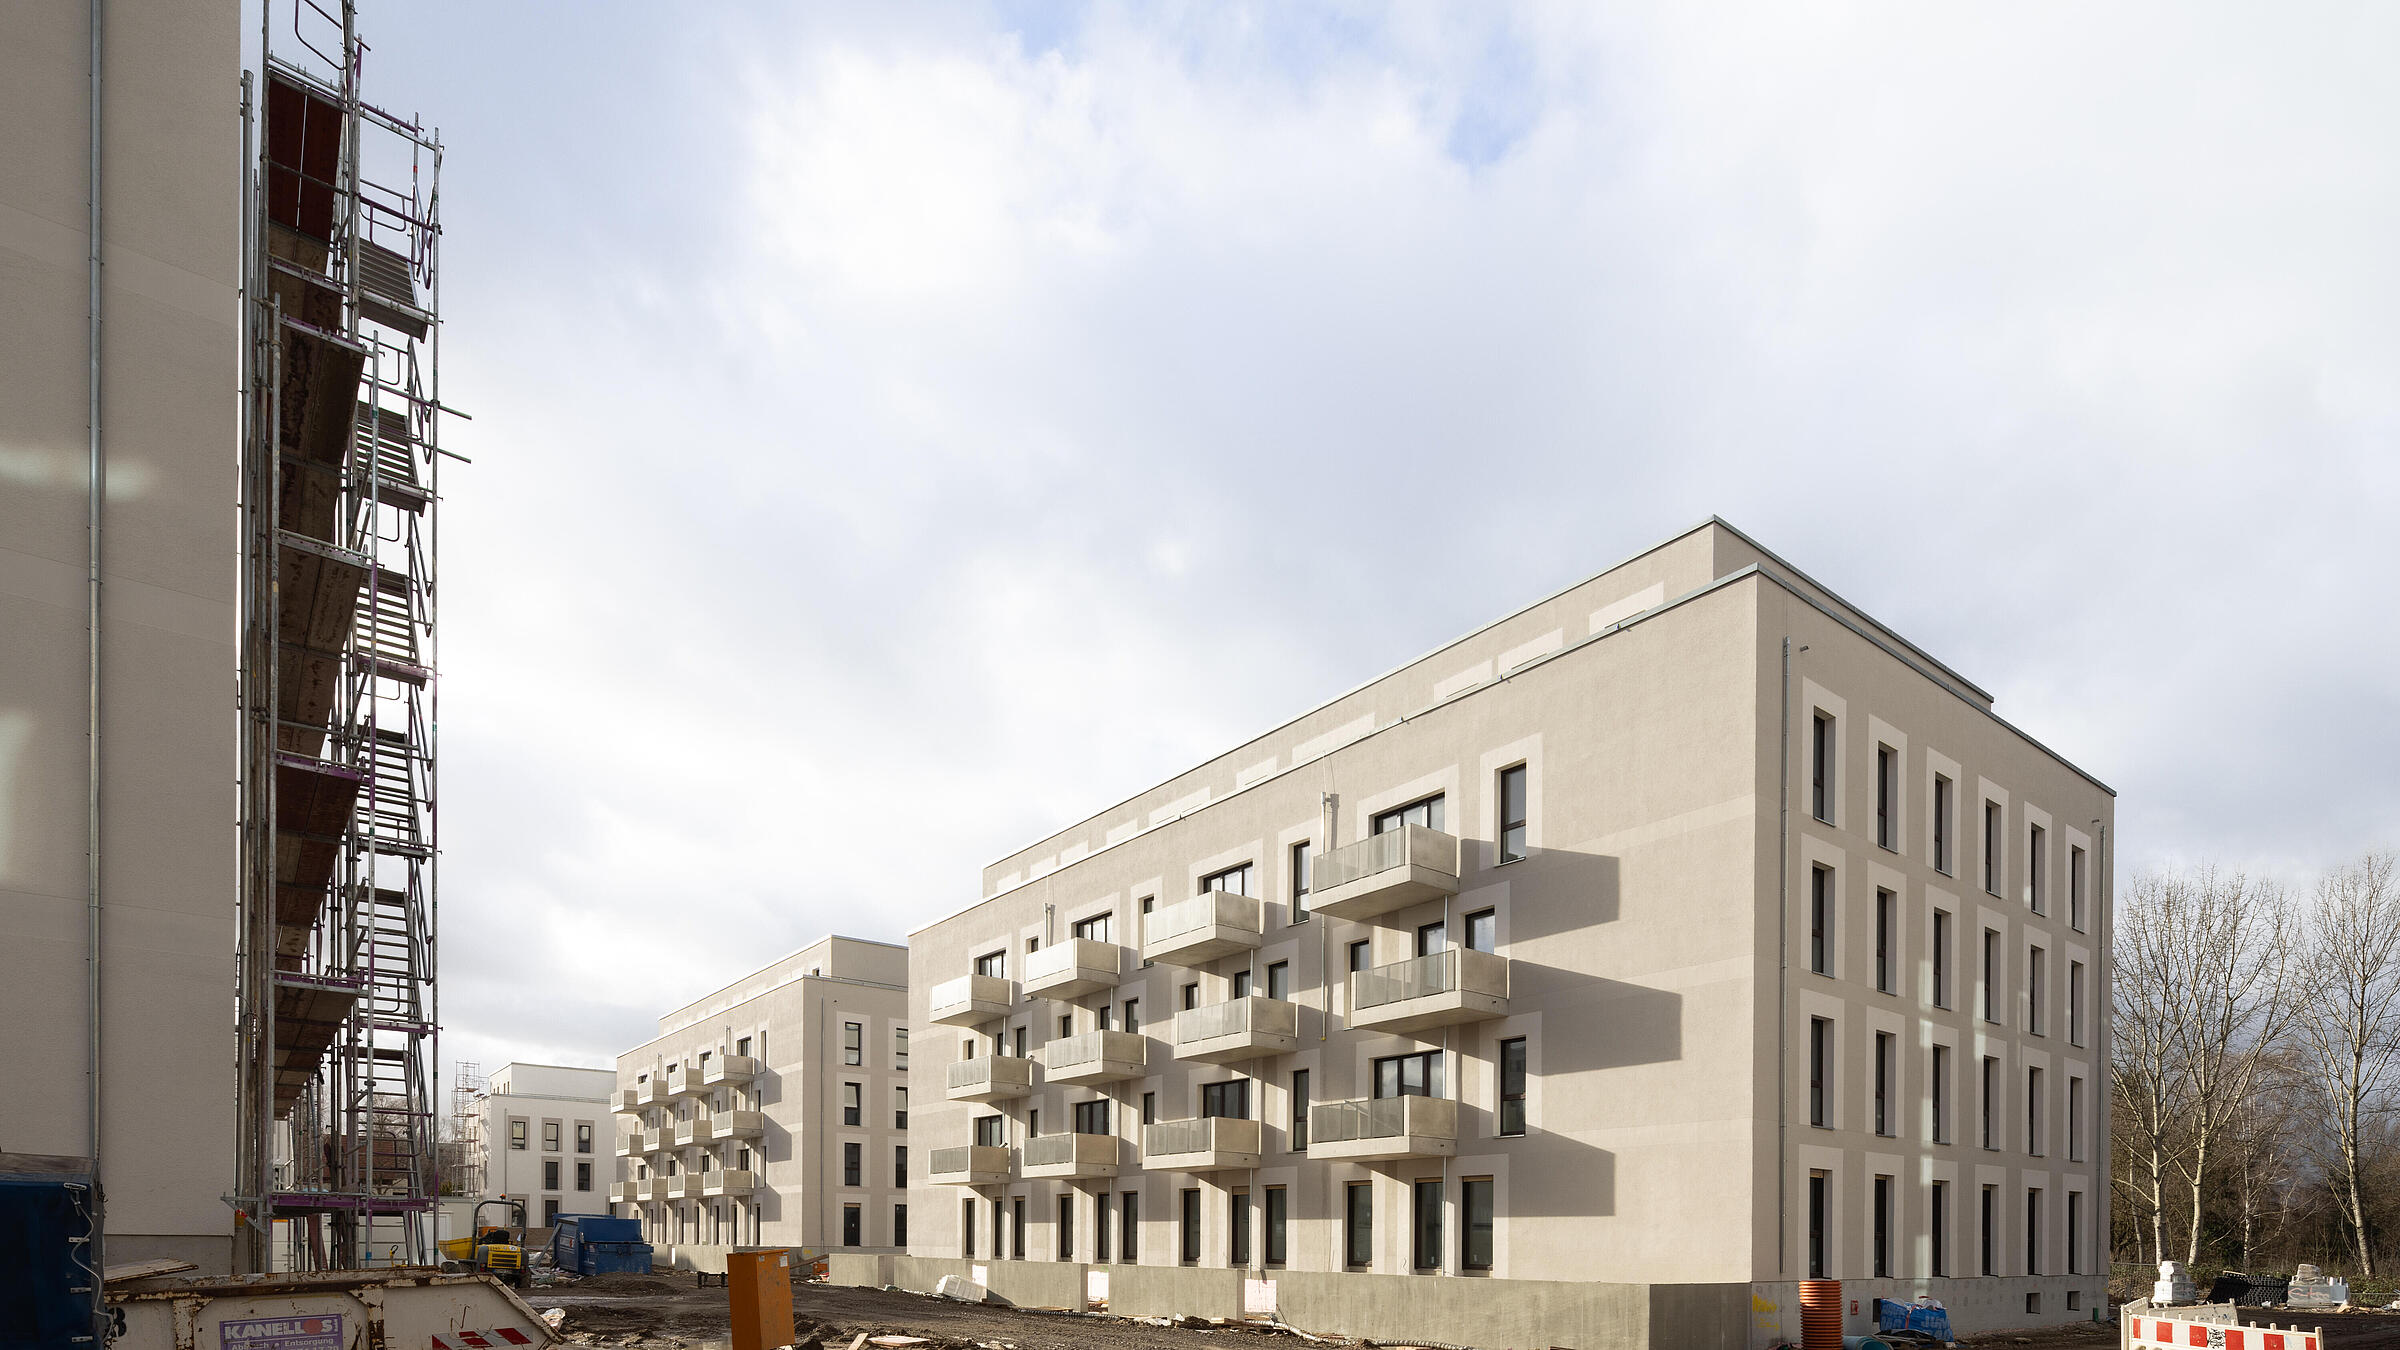 Bild zeigt seitlichen Blick auf ein Gebäude im neuen Quartier in der Idunastraße. Außenaufnahme. Links im Bild Anschnitt eines weiteren Gebäudes mit Balkonen.